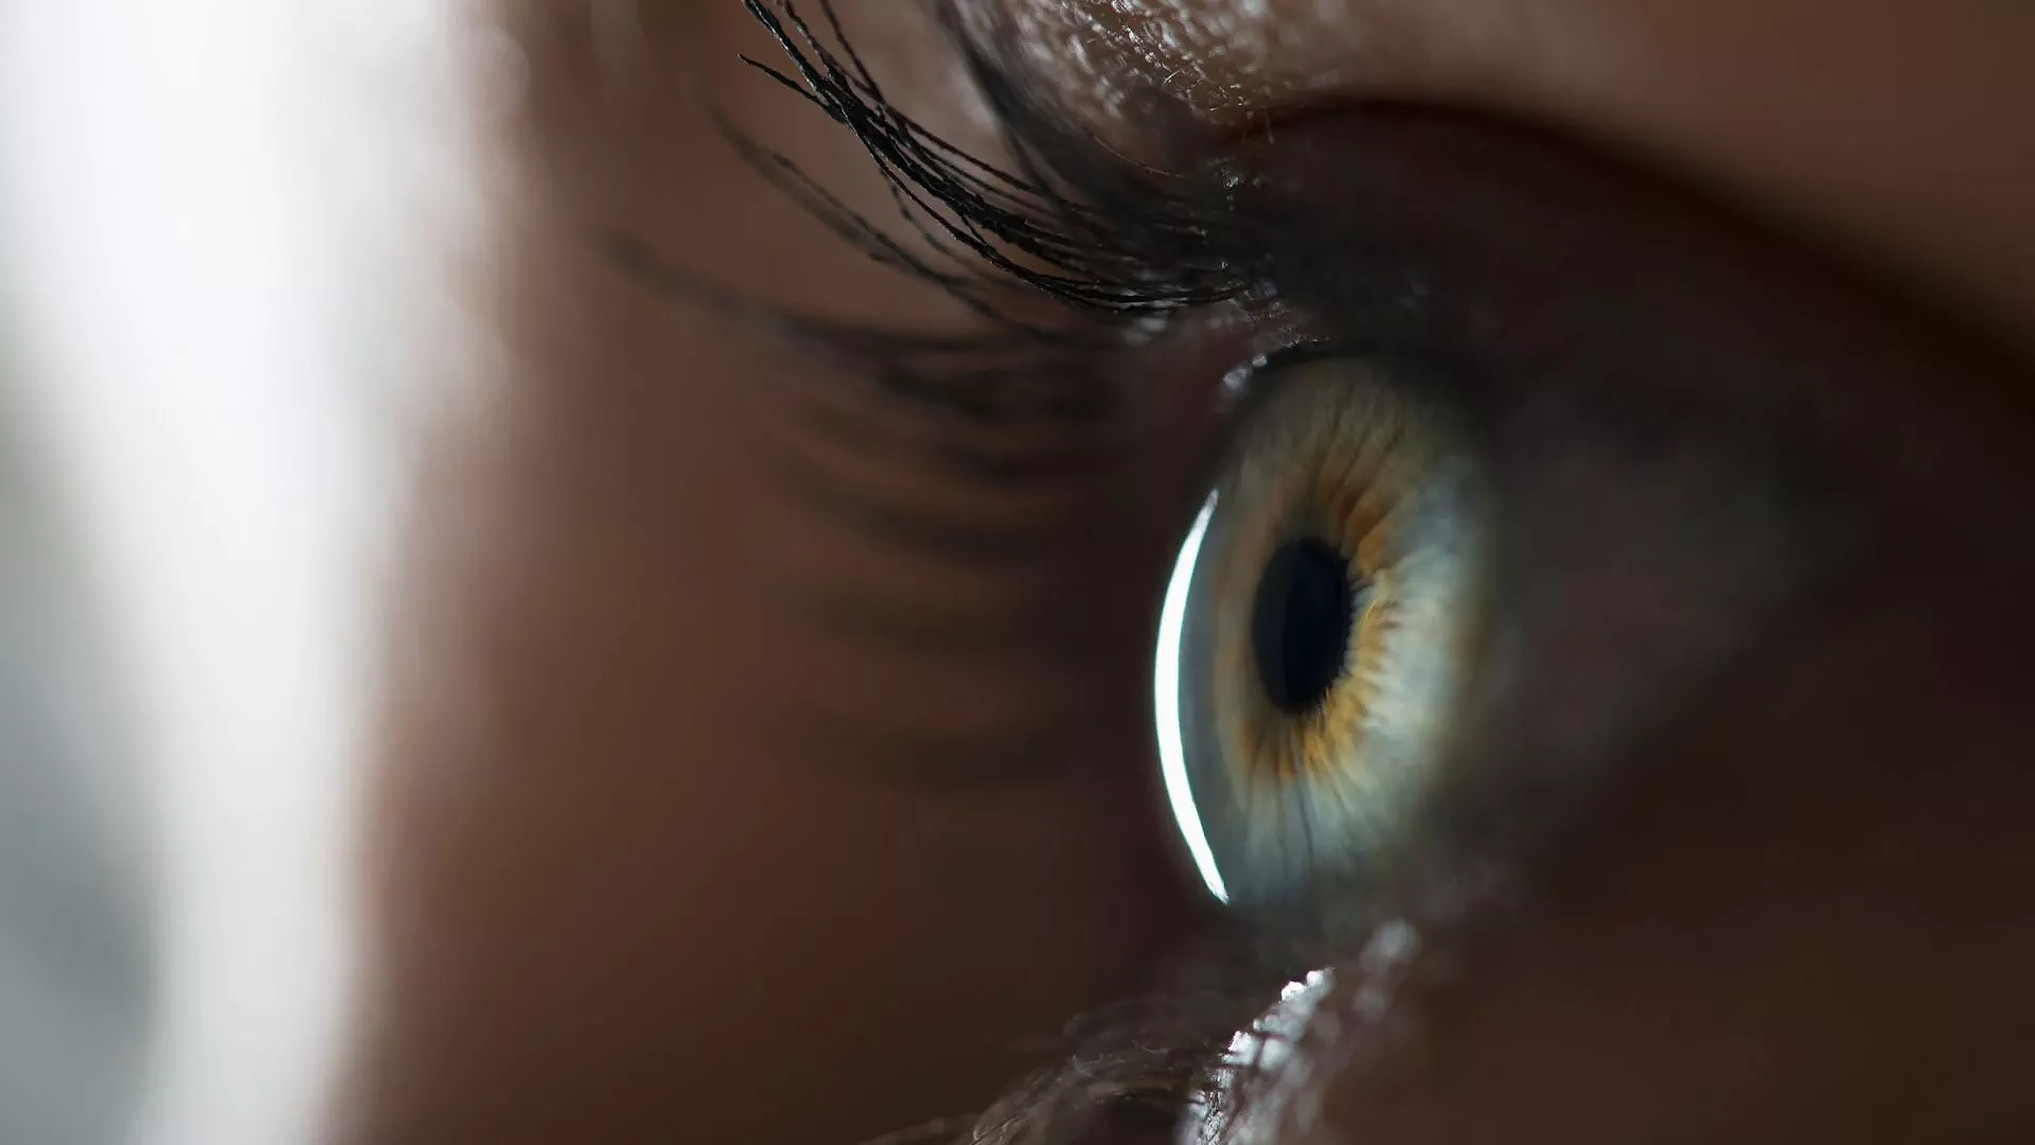 O nouă terapie genetică ar putea restabili vederea nocturnă a persoanelor cu afecțiuni oculare moștenite